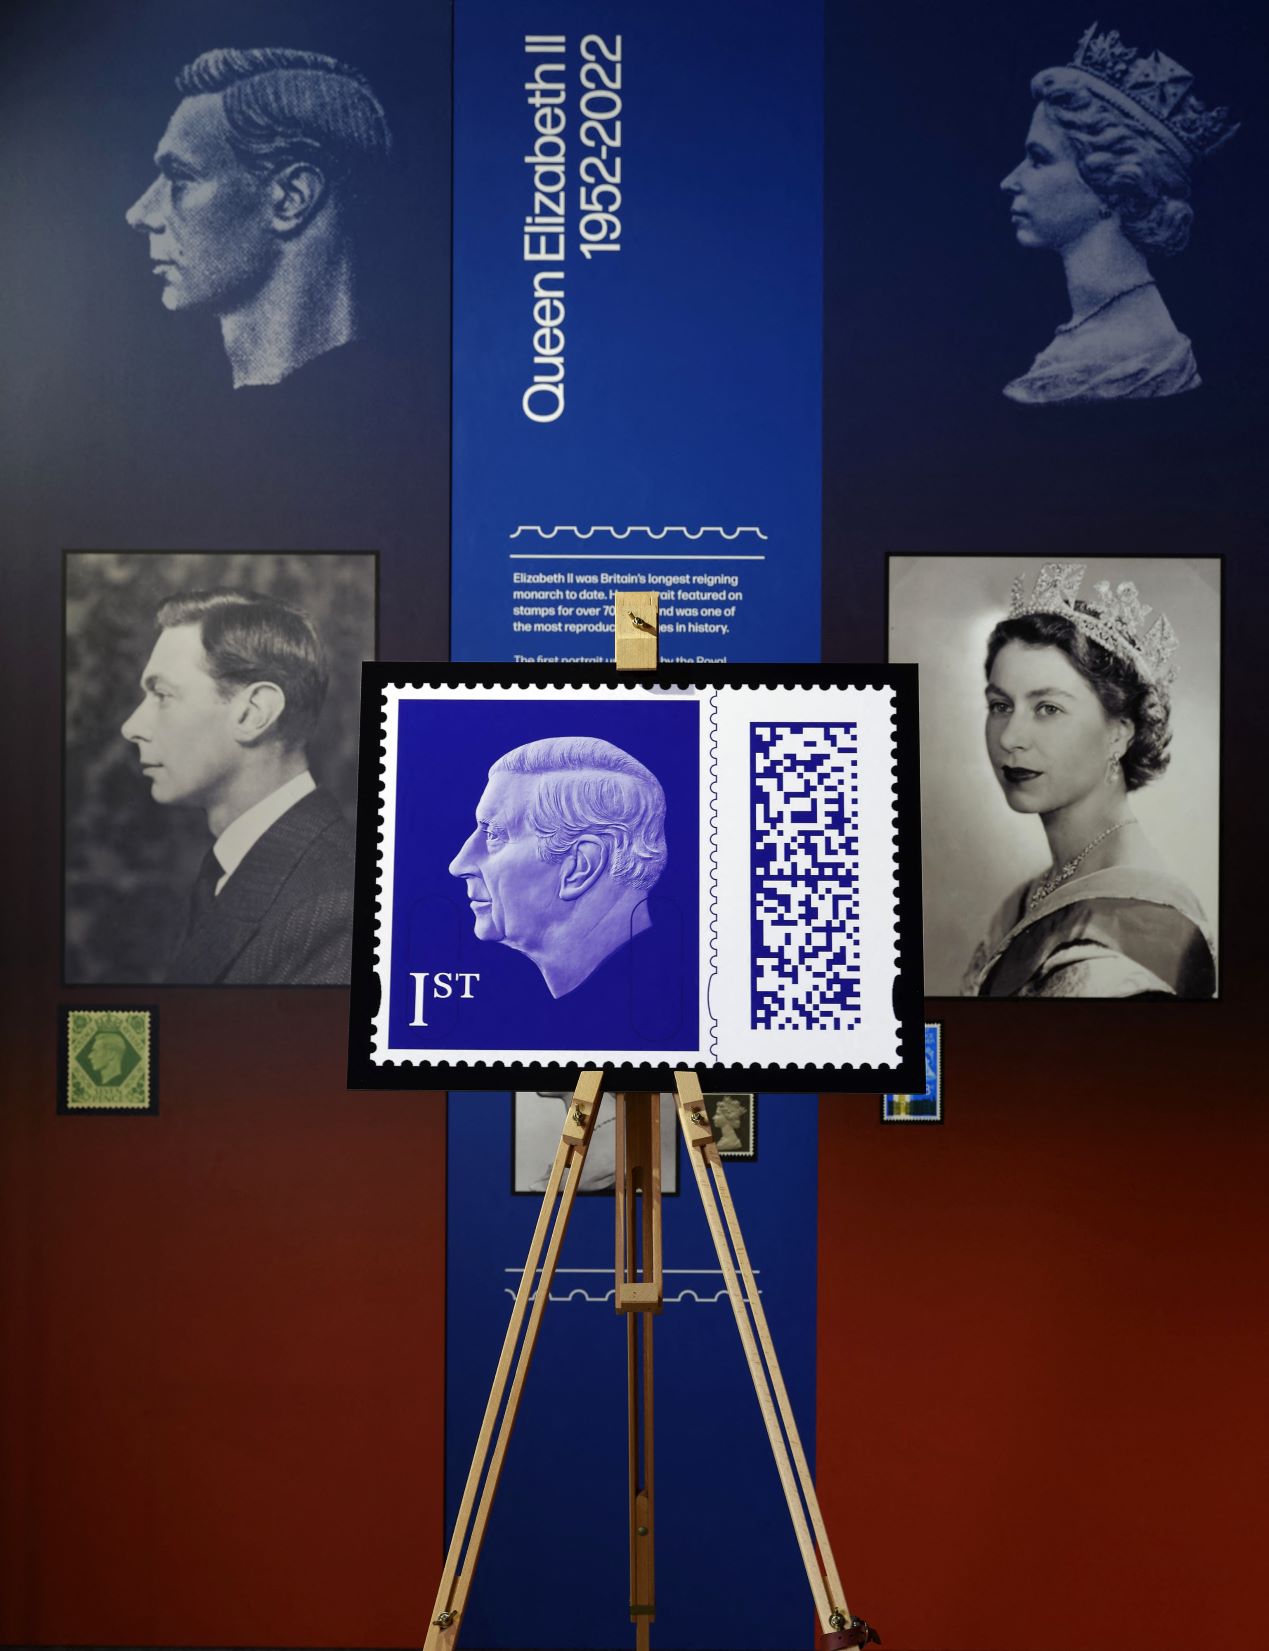 III. Károly koronaékszerek nélküli egyszerű portréja szerepel az új brit postai bélyegeken